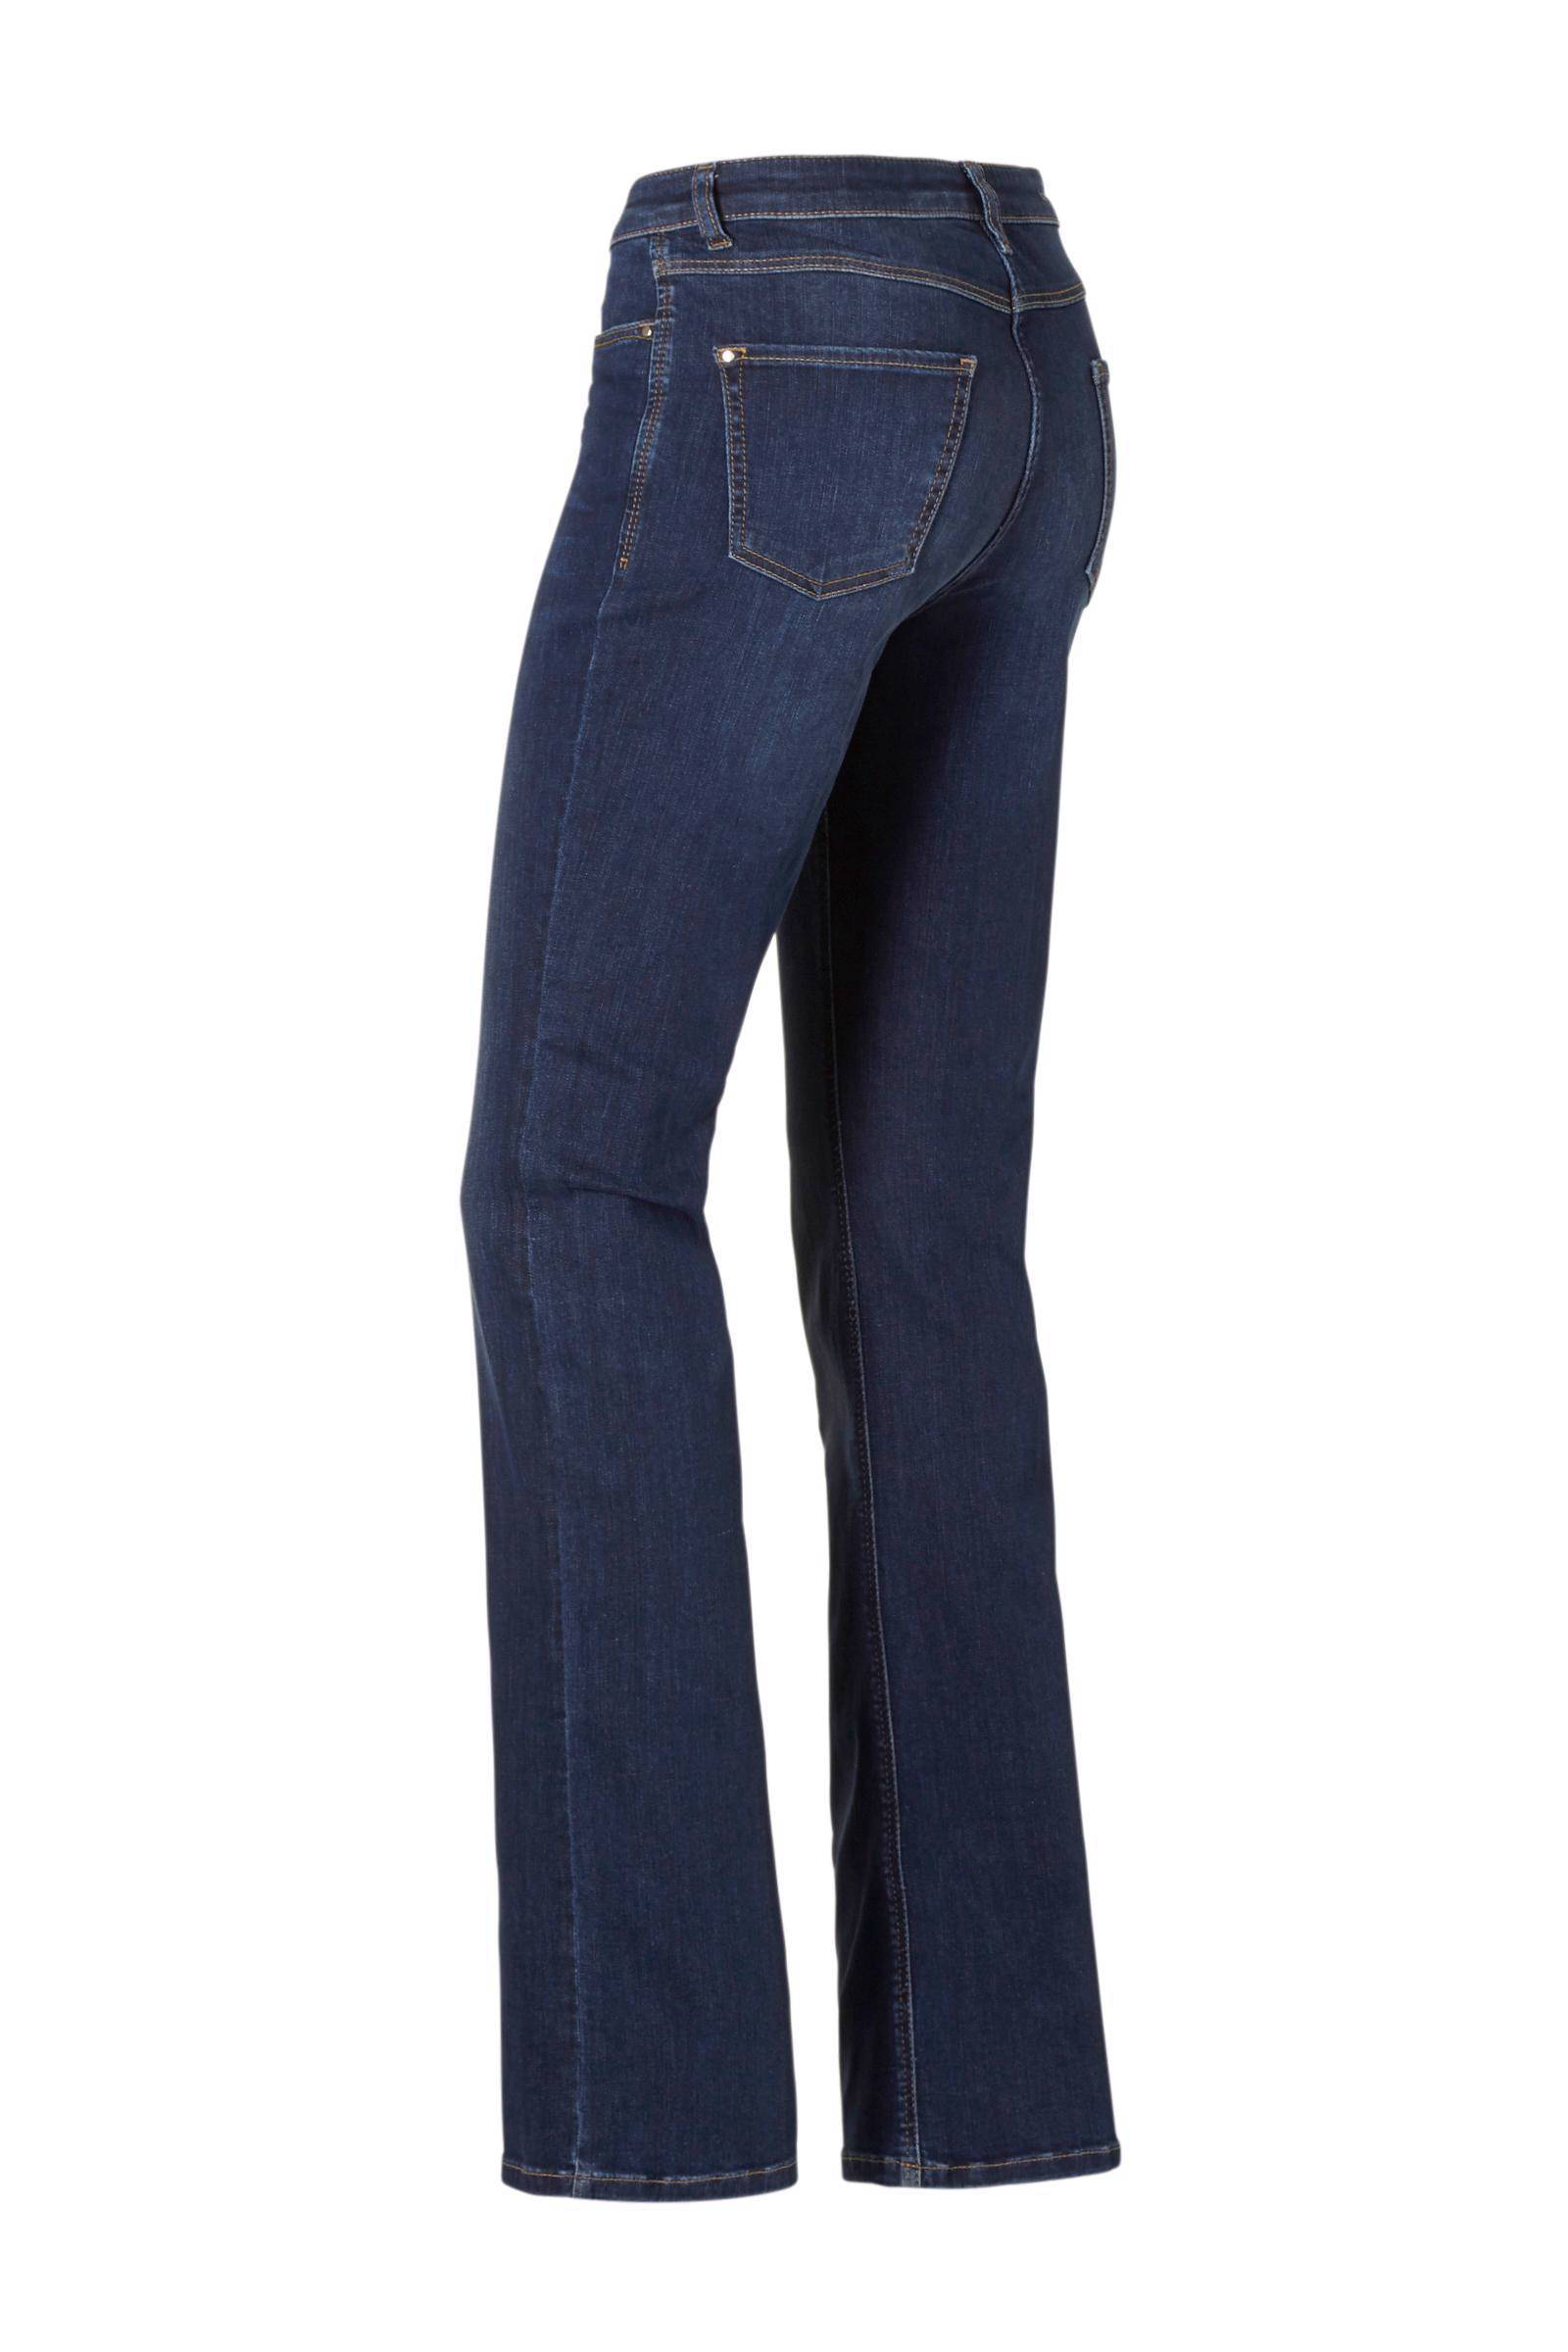 Big Mac Denim 32x28 Kleding Gender-neutrale kleding volwassenen Jeans 